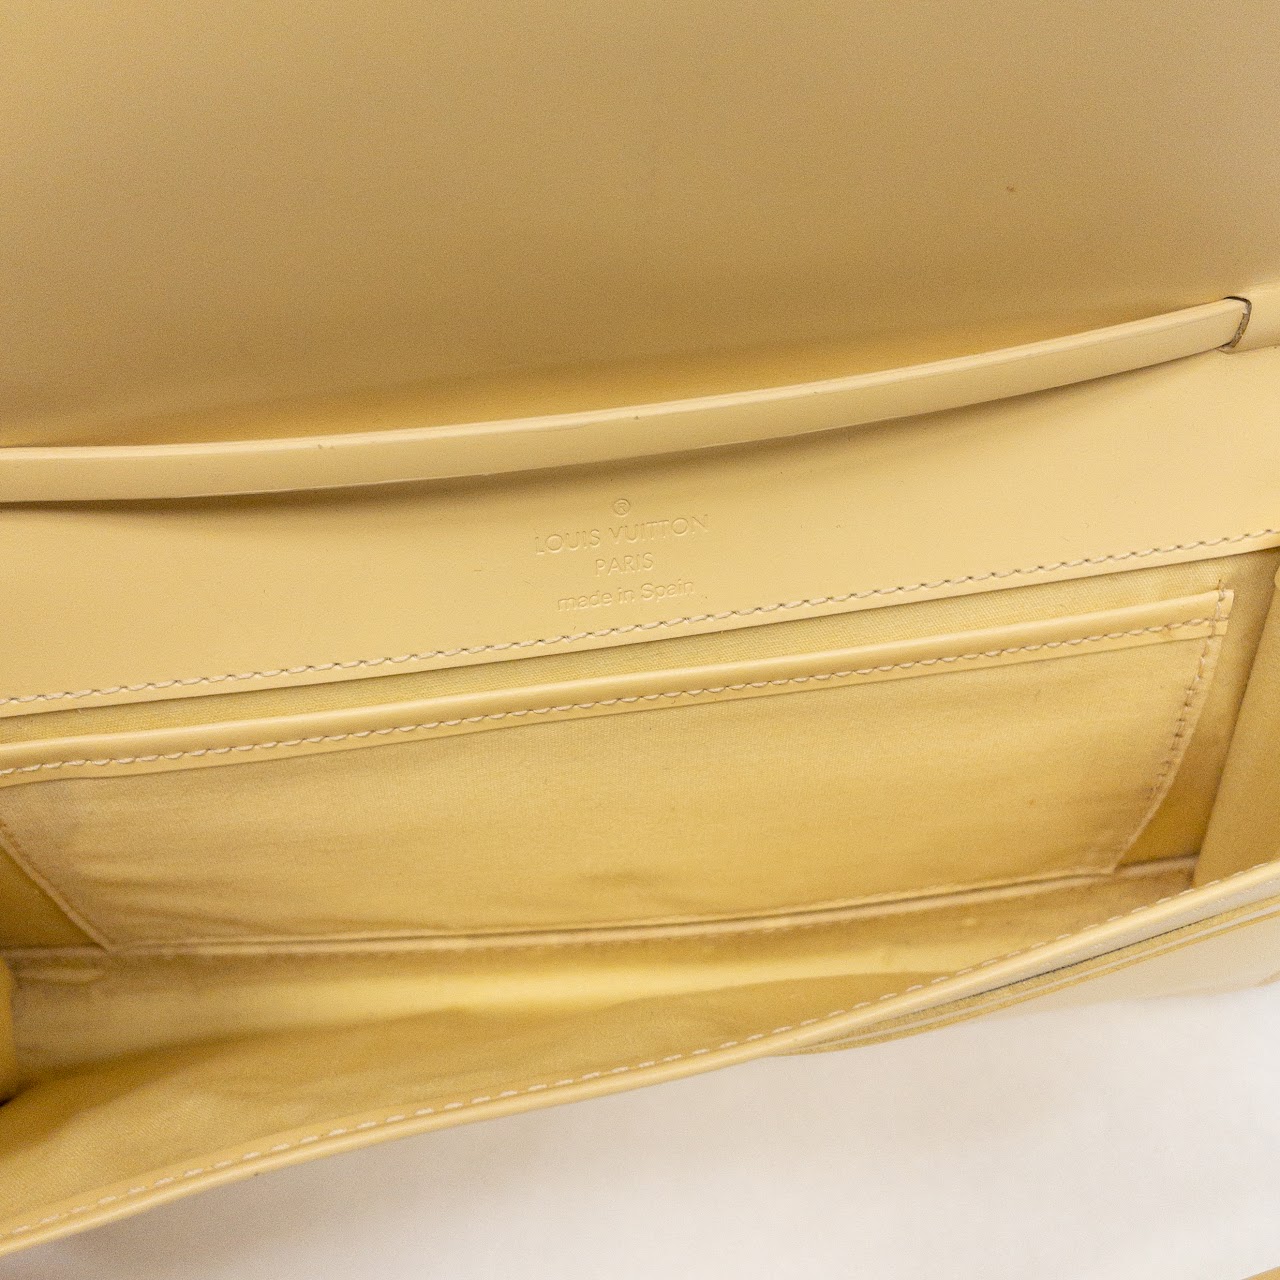 At Auction: Louis Vuitton, LOUIS VUITTON shoulder bag HONFLEUR